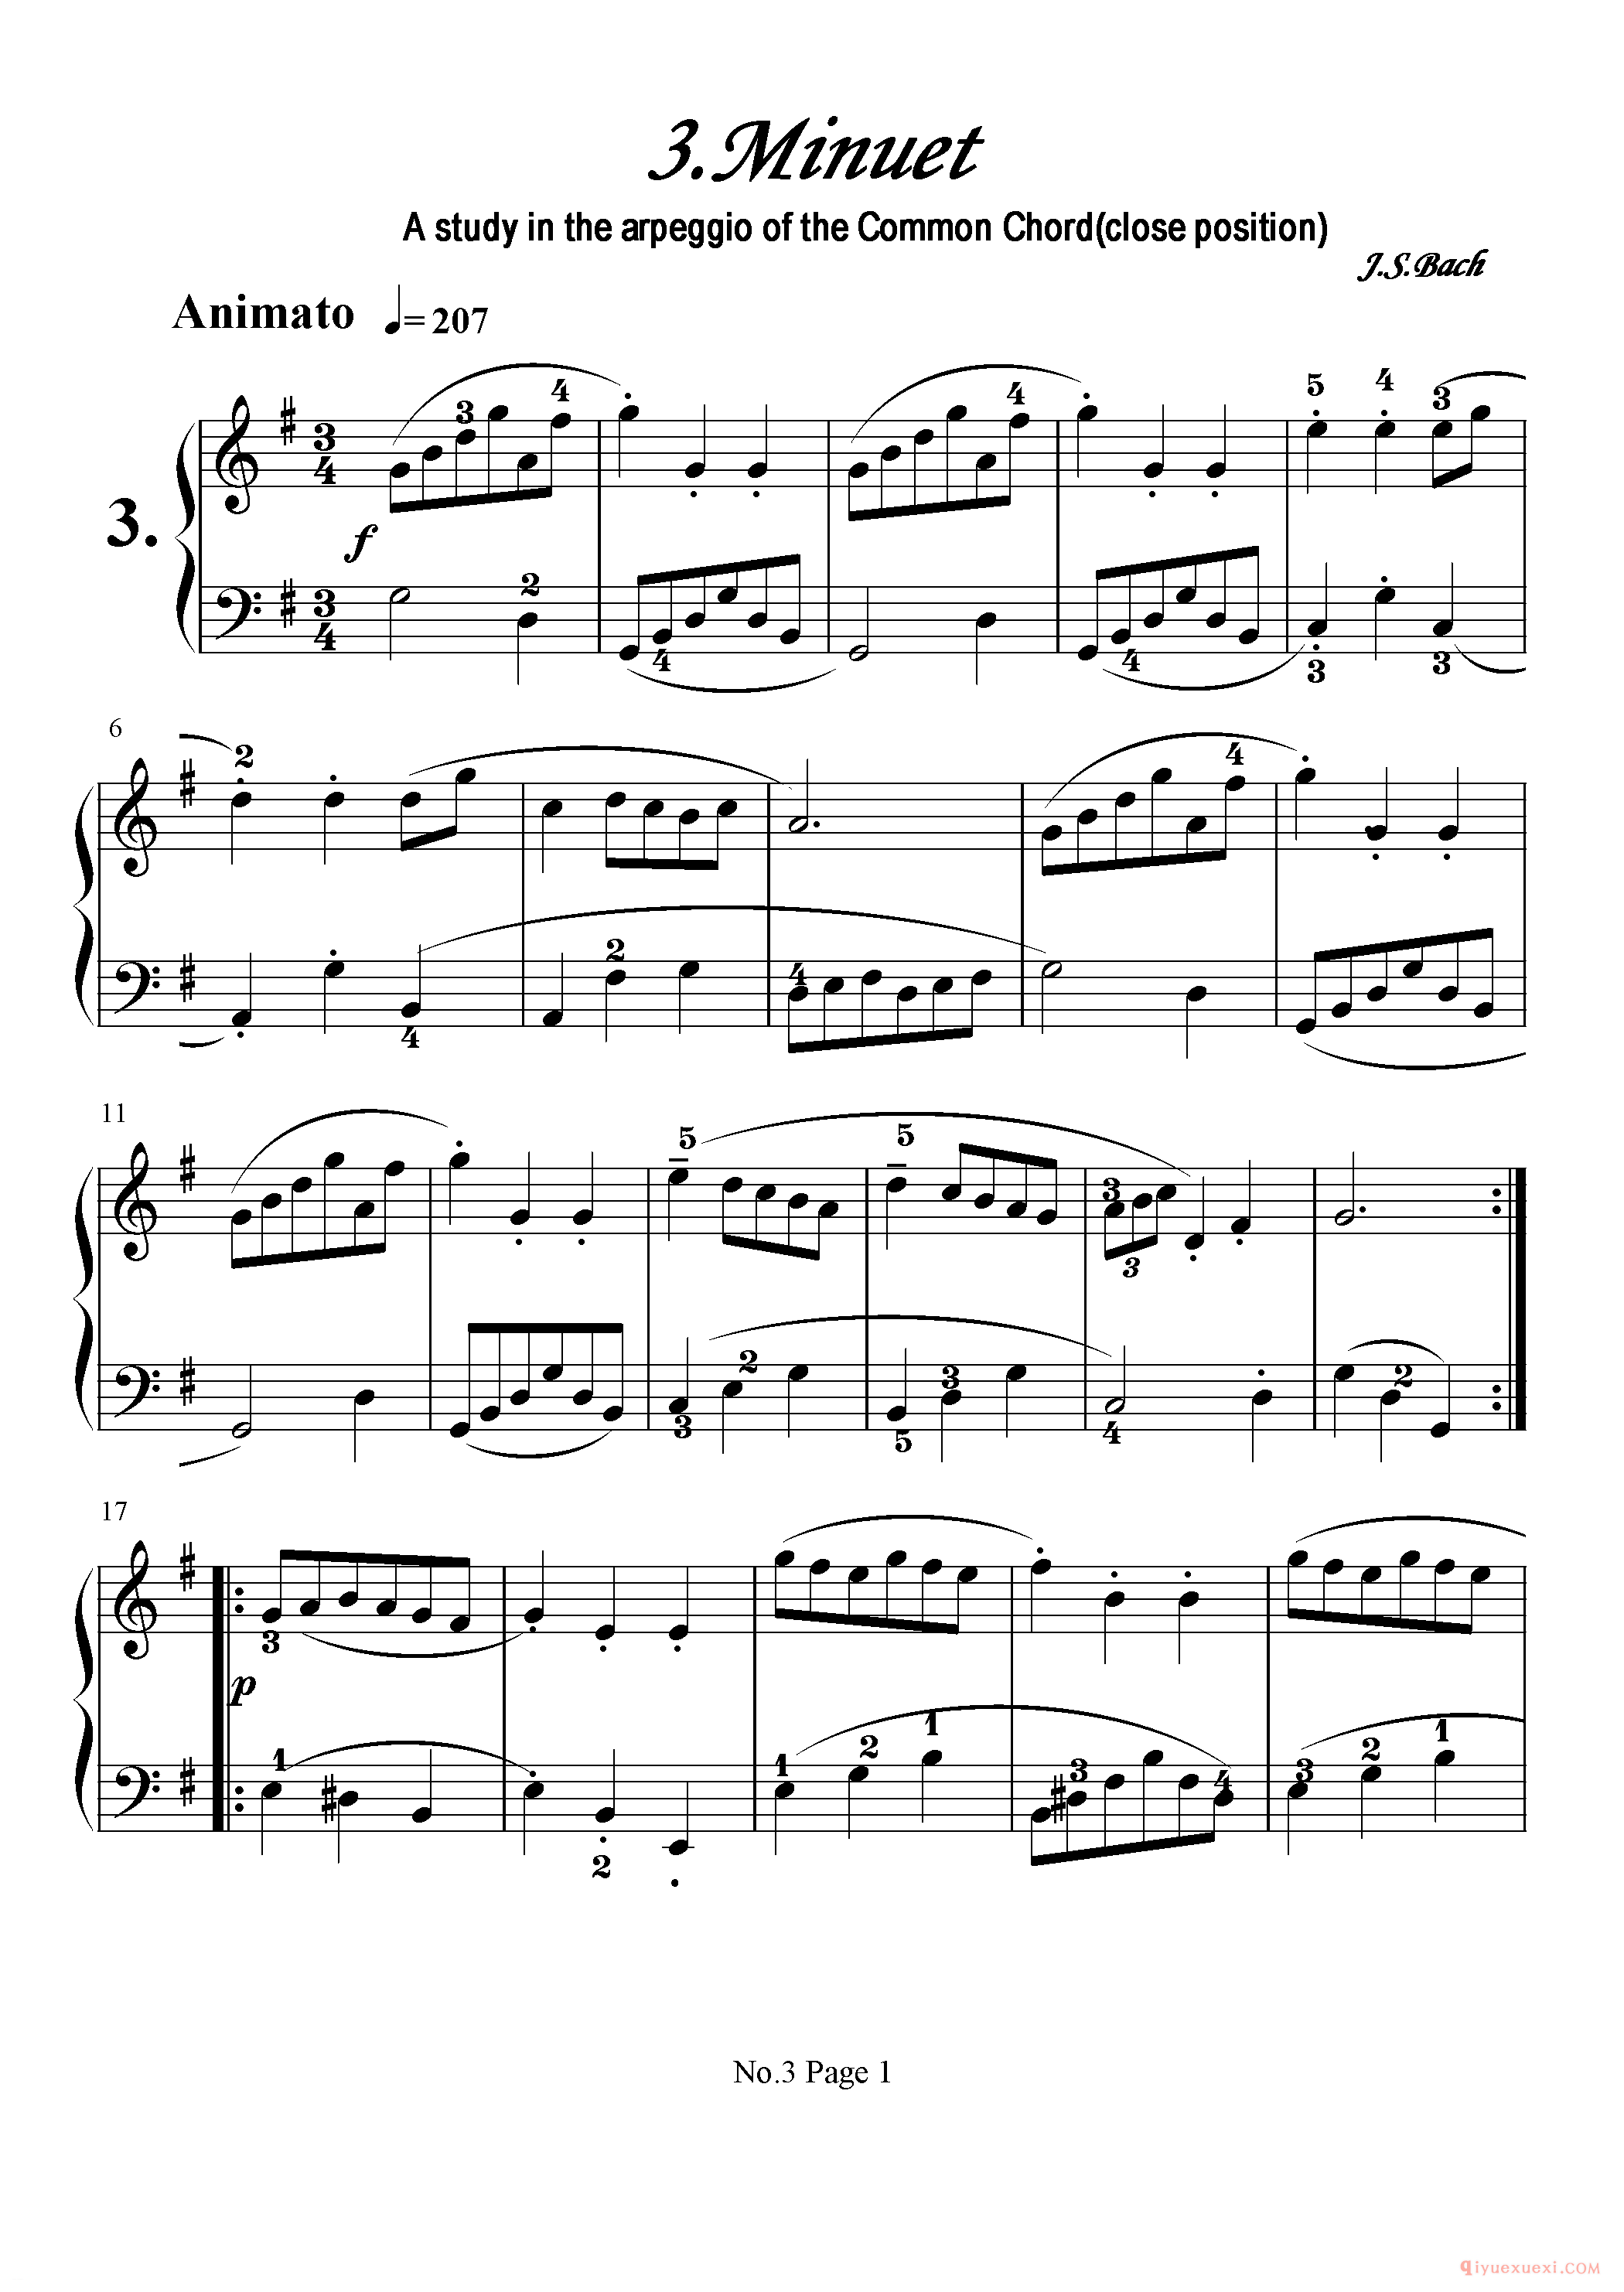 初级钢琴乐曲谱《小步舞曲 Minuet》巴赫,A study in the arpeggio of the Common Chord(close position).